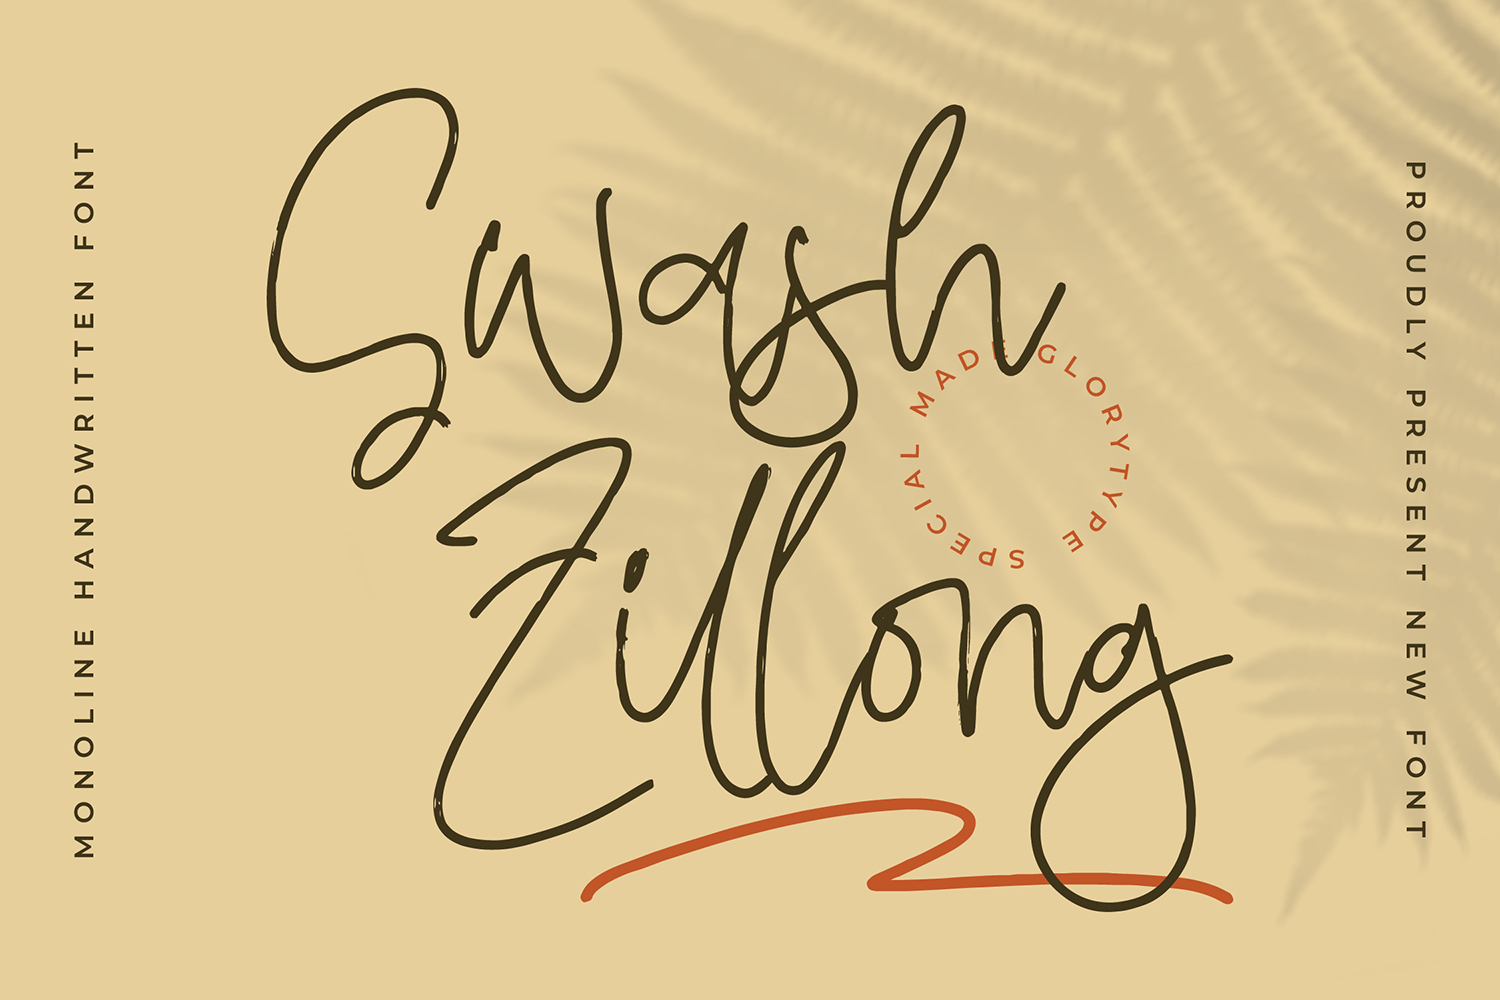 Swash Zillong Free Font